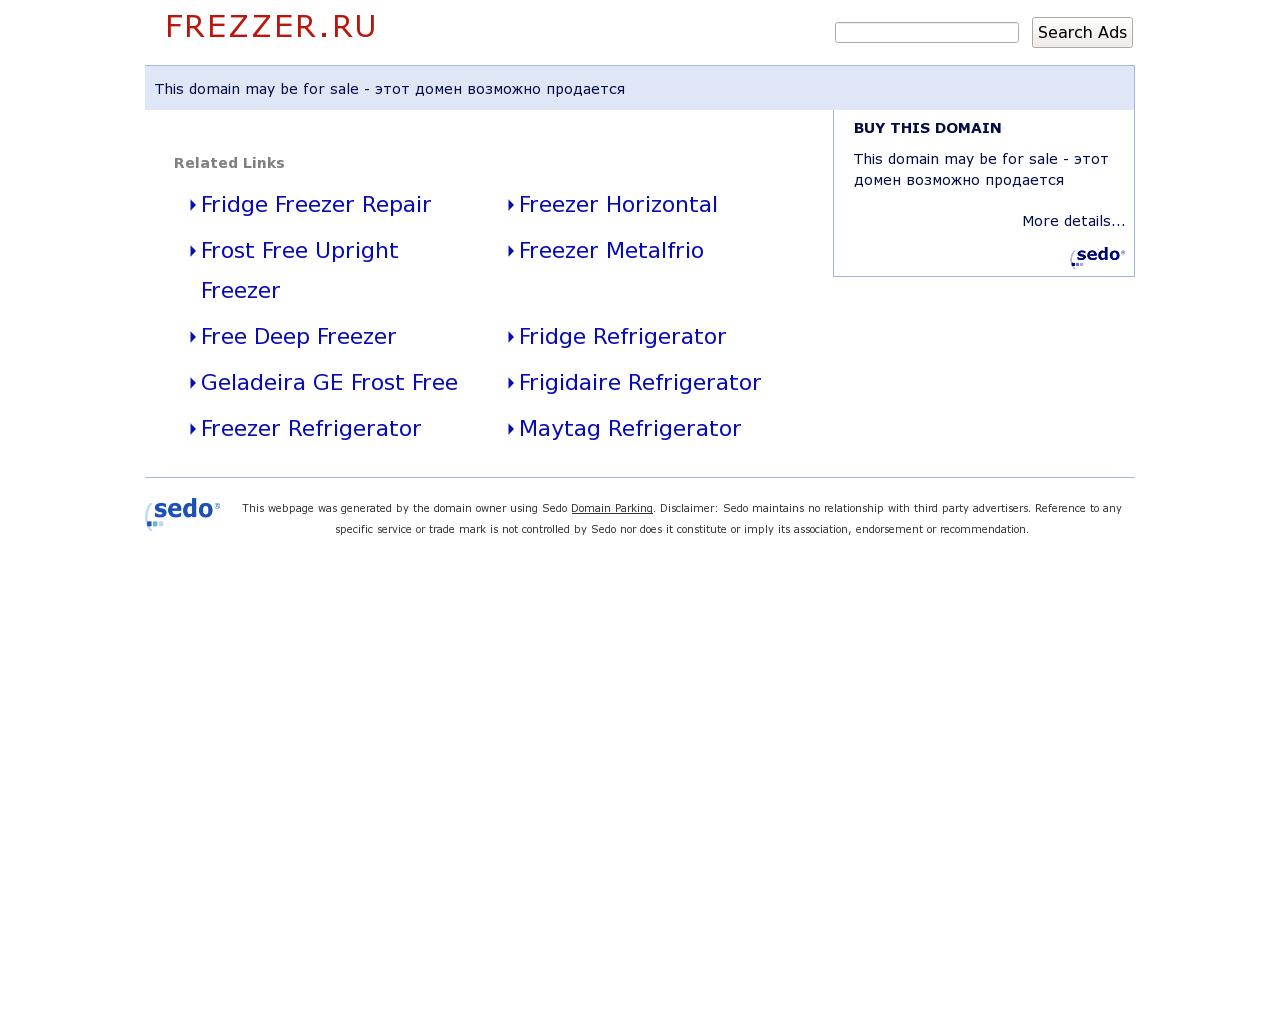 Изображение сайта frezzer.ru в разрешении 1280x1024